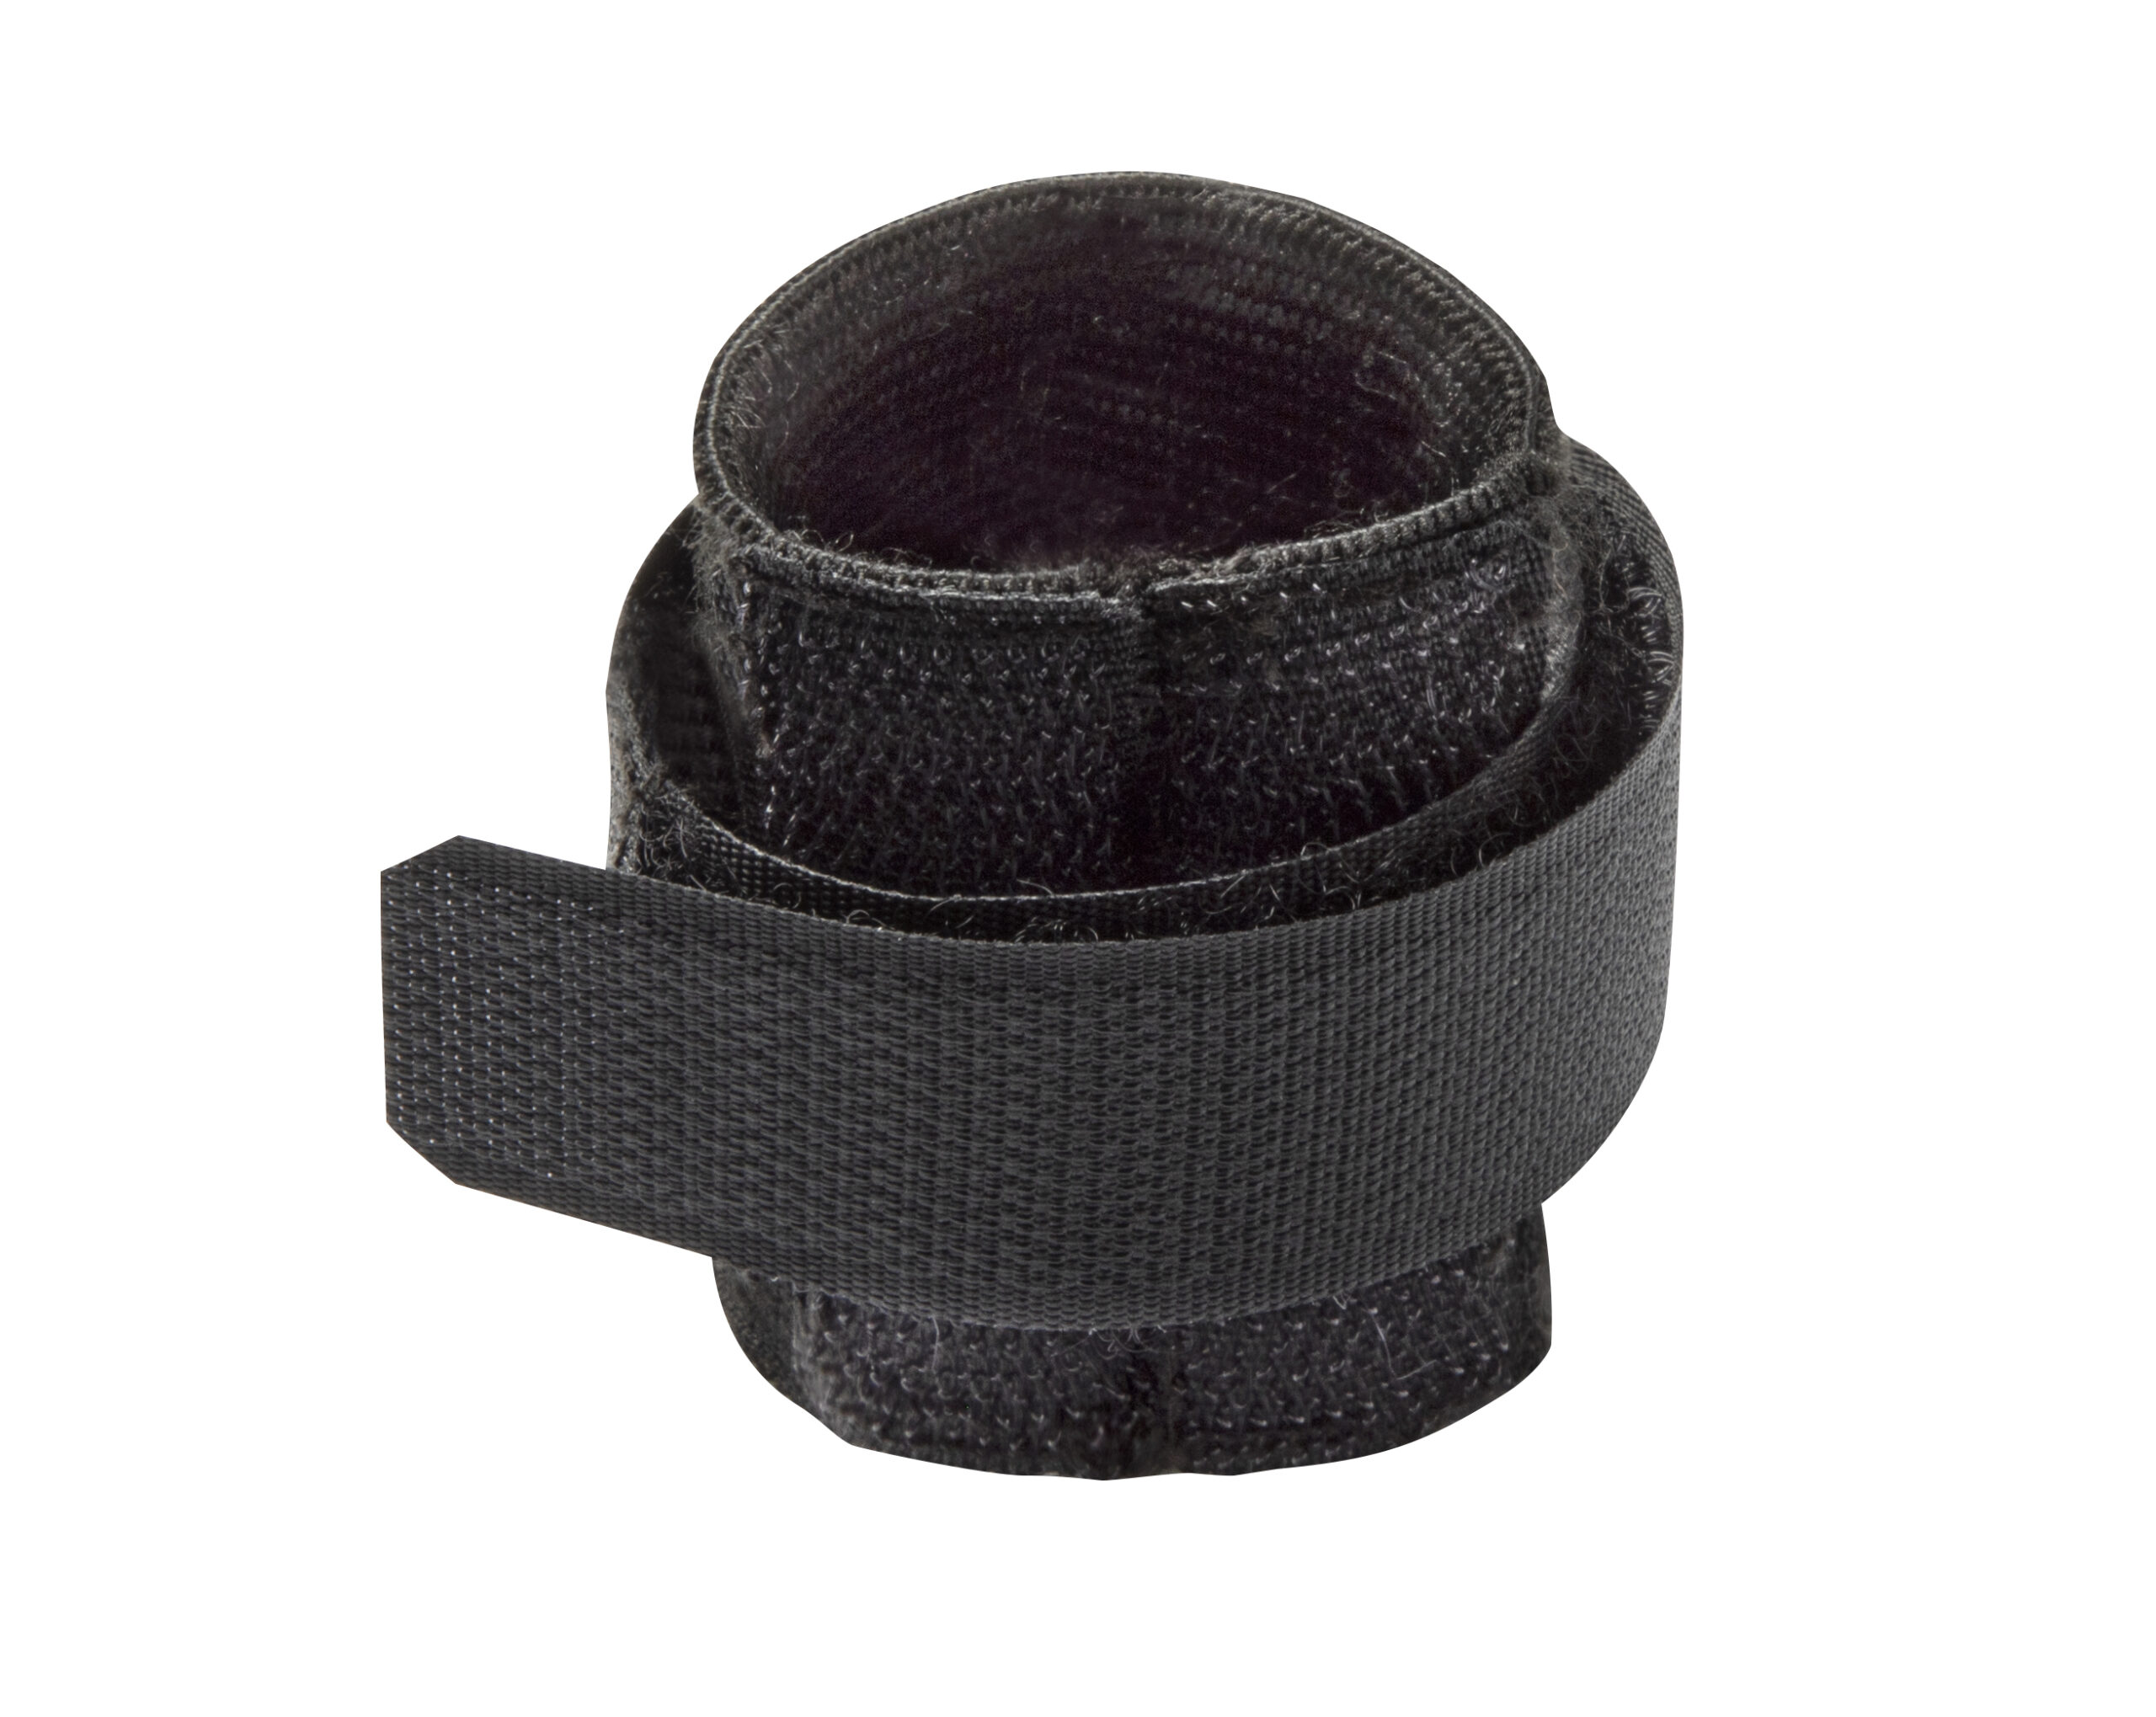 Velcro strap fastener - Wilson-Pickups